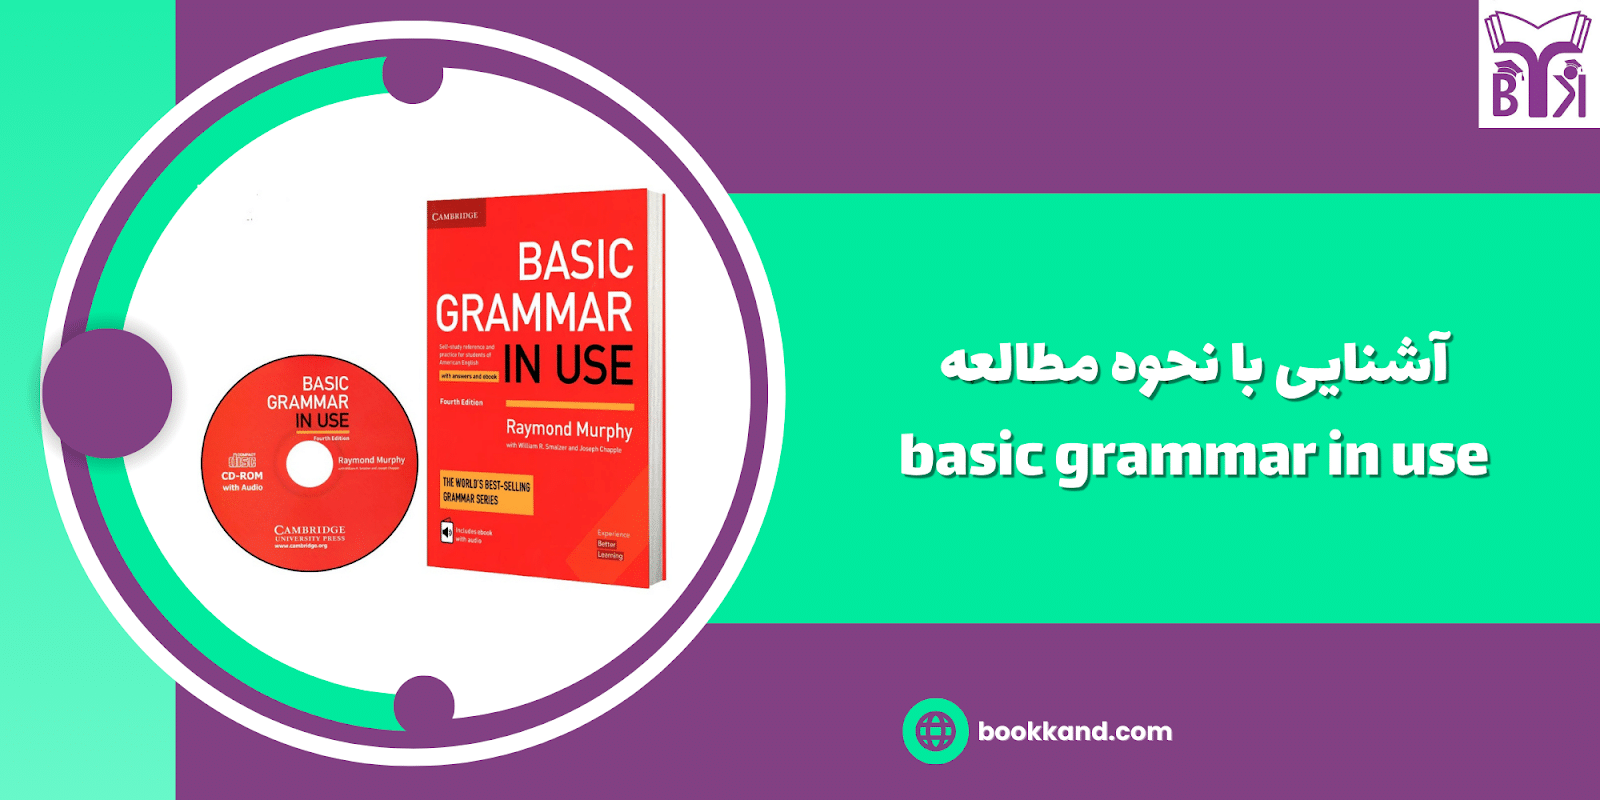 خرید کتاب basic grammar in use(بیسیک گرامر این یوز) _ بوک کند